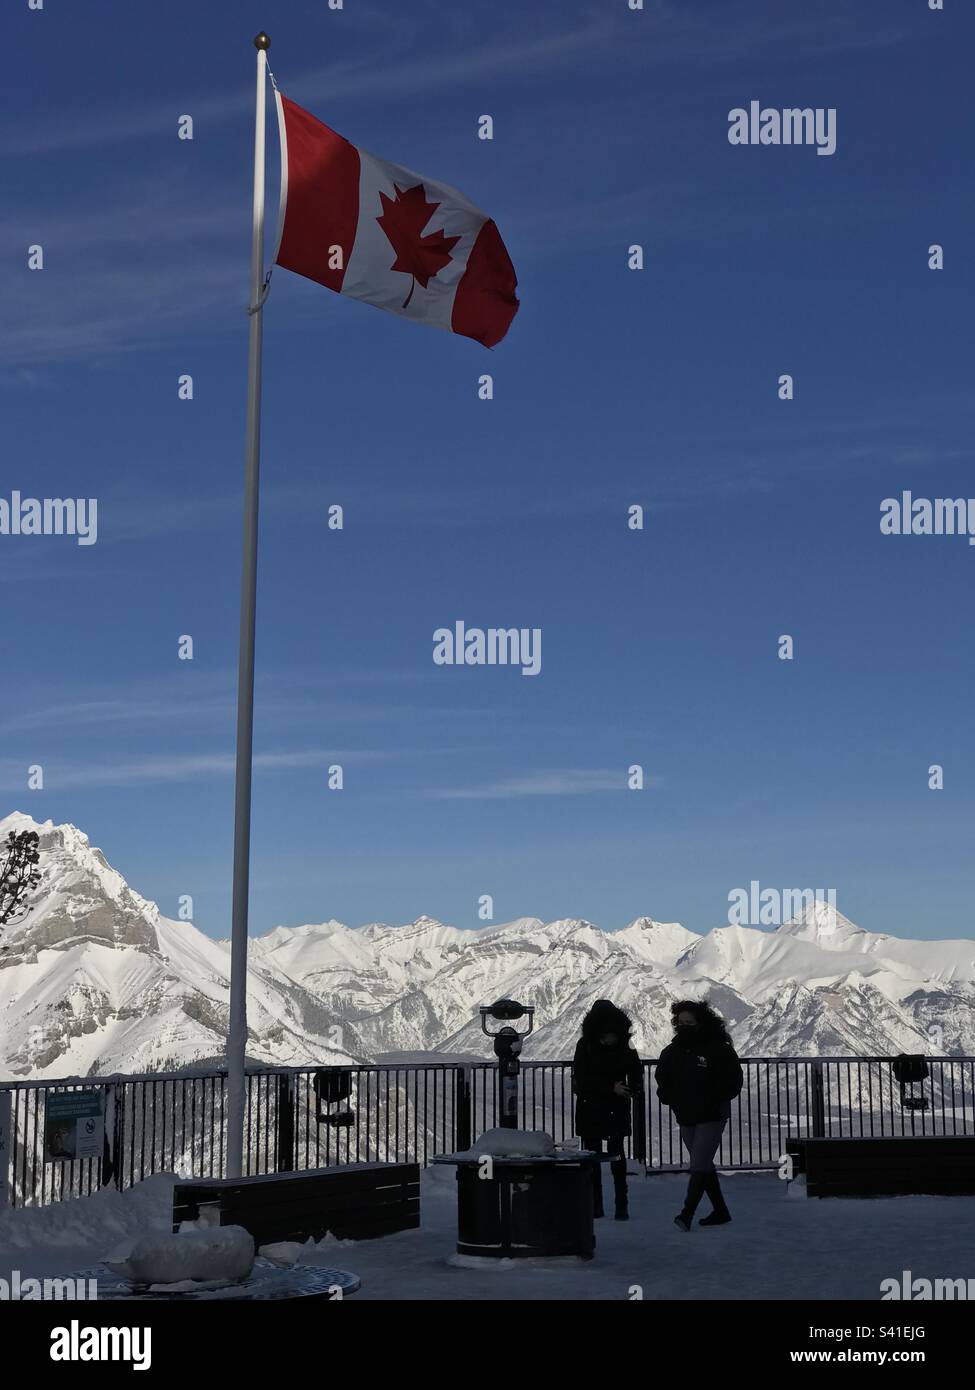 Gipfel des Berges in der Banff Gondola im Winter. Blauer Himmel, kanadische Flagge und weiße Rockies – Alberta, Kanada Stockfoto